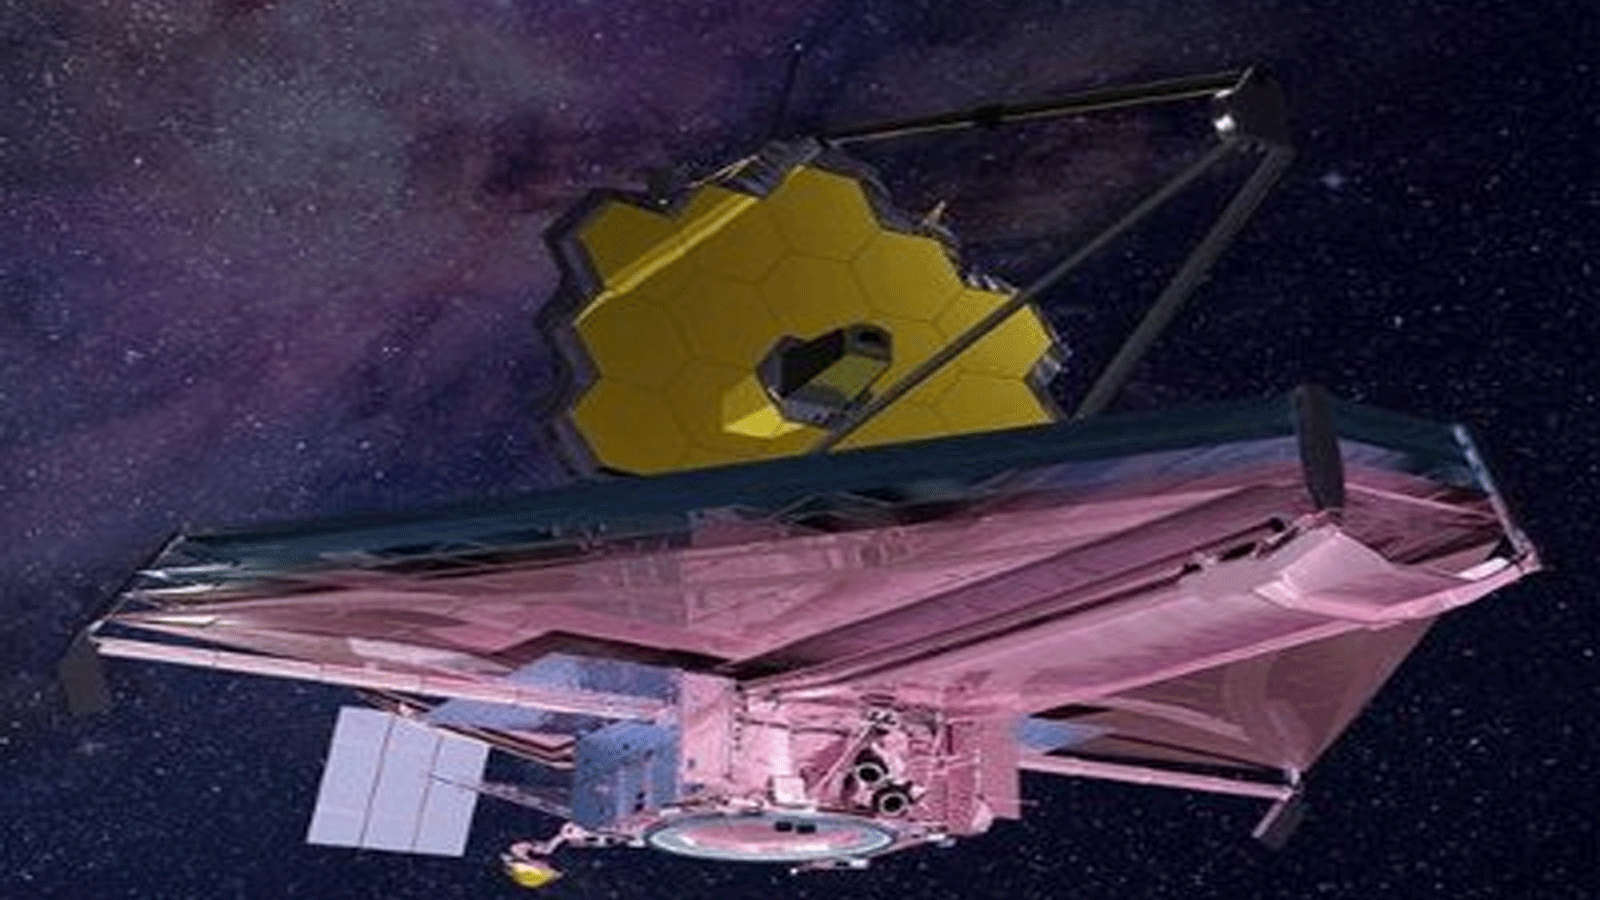 التلسكوب الفضائي جيمس ويب يقوم بمهامه في الفضاء